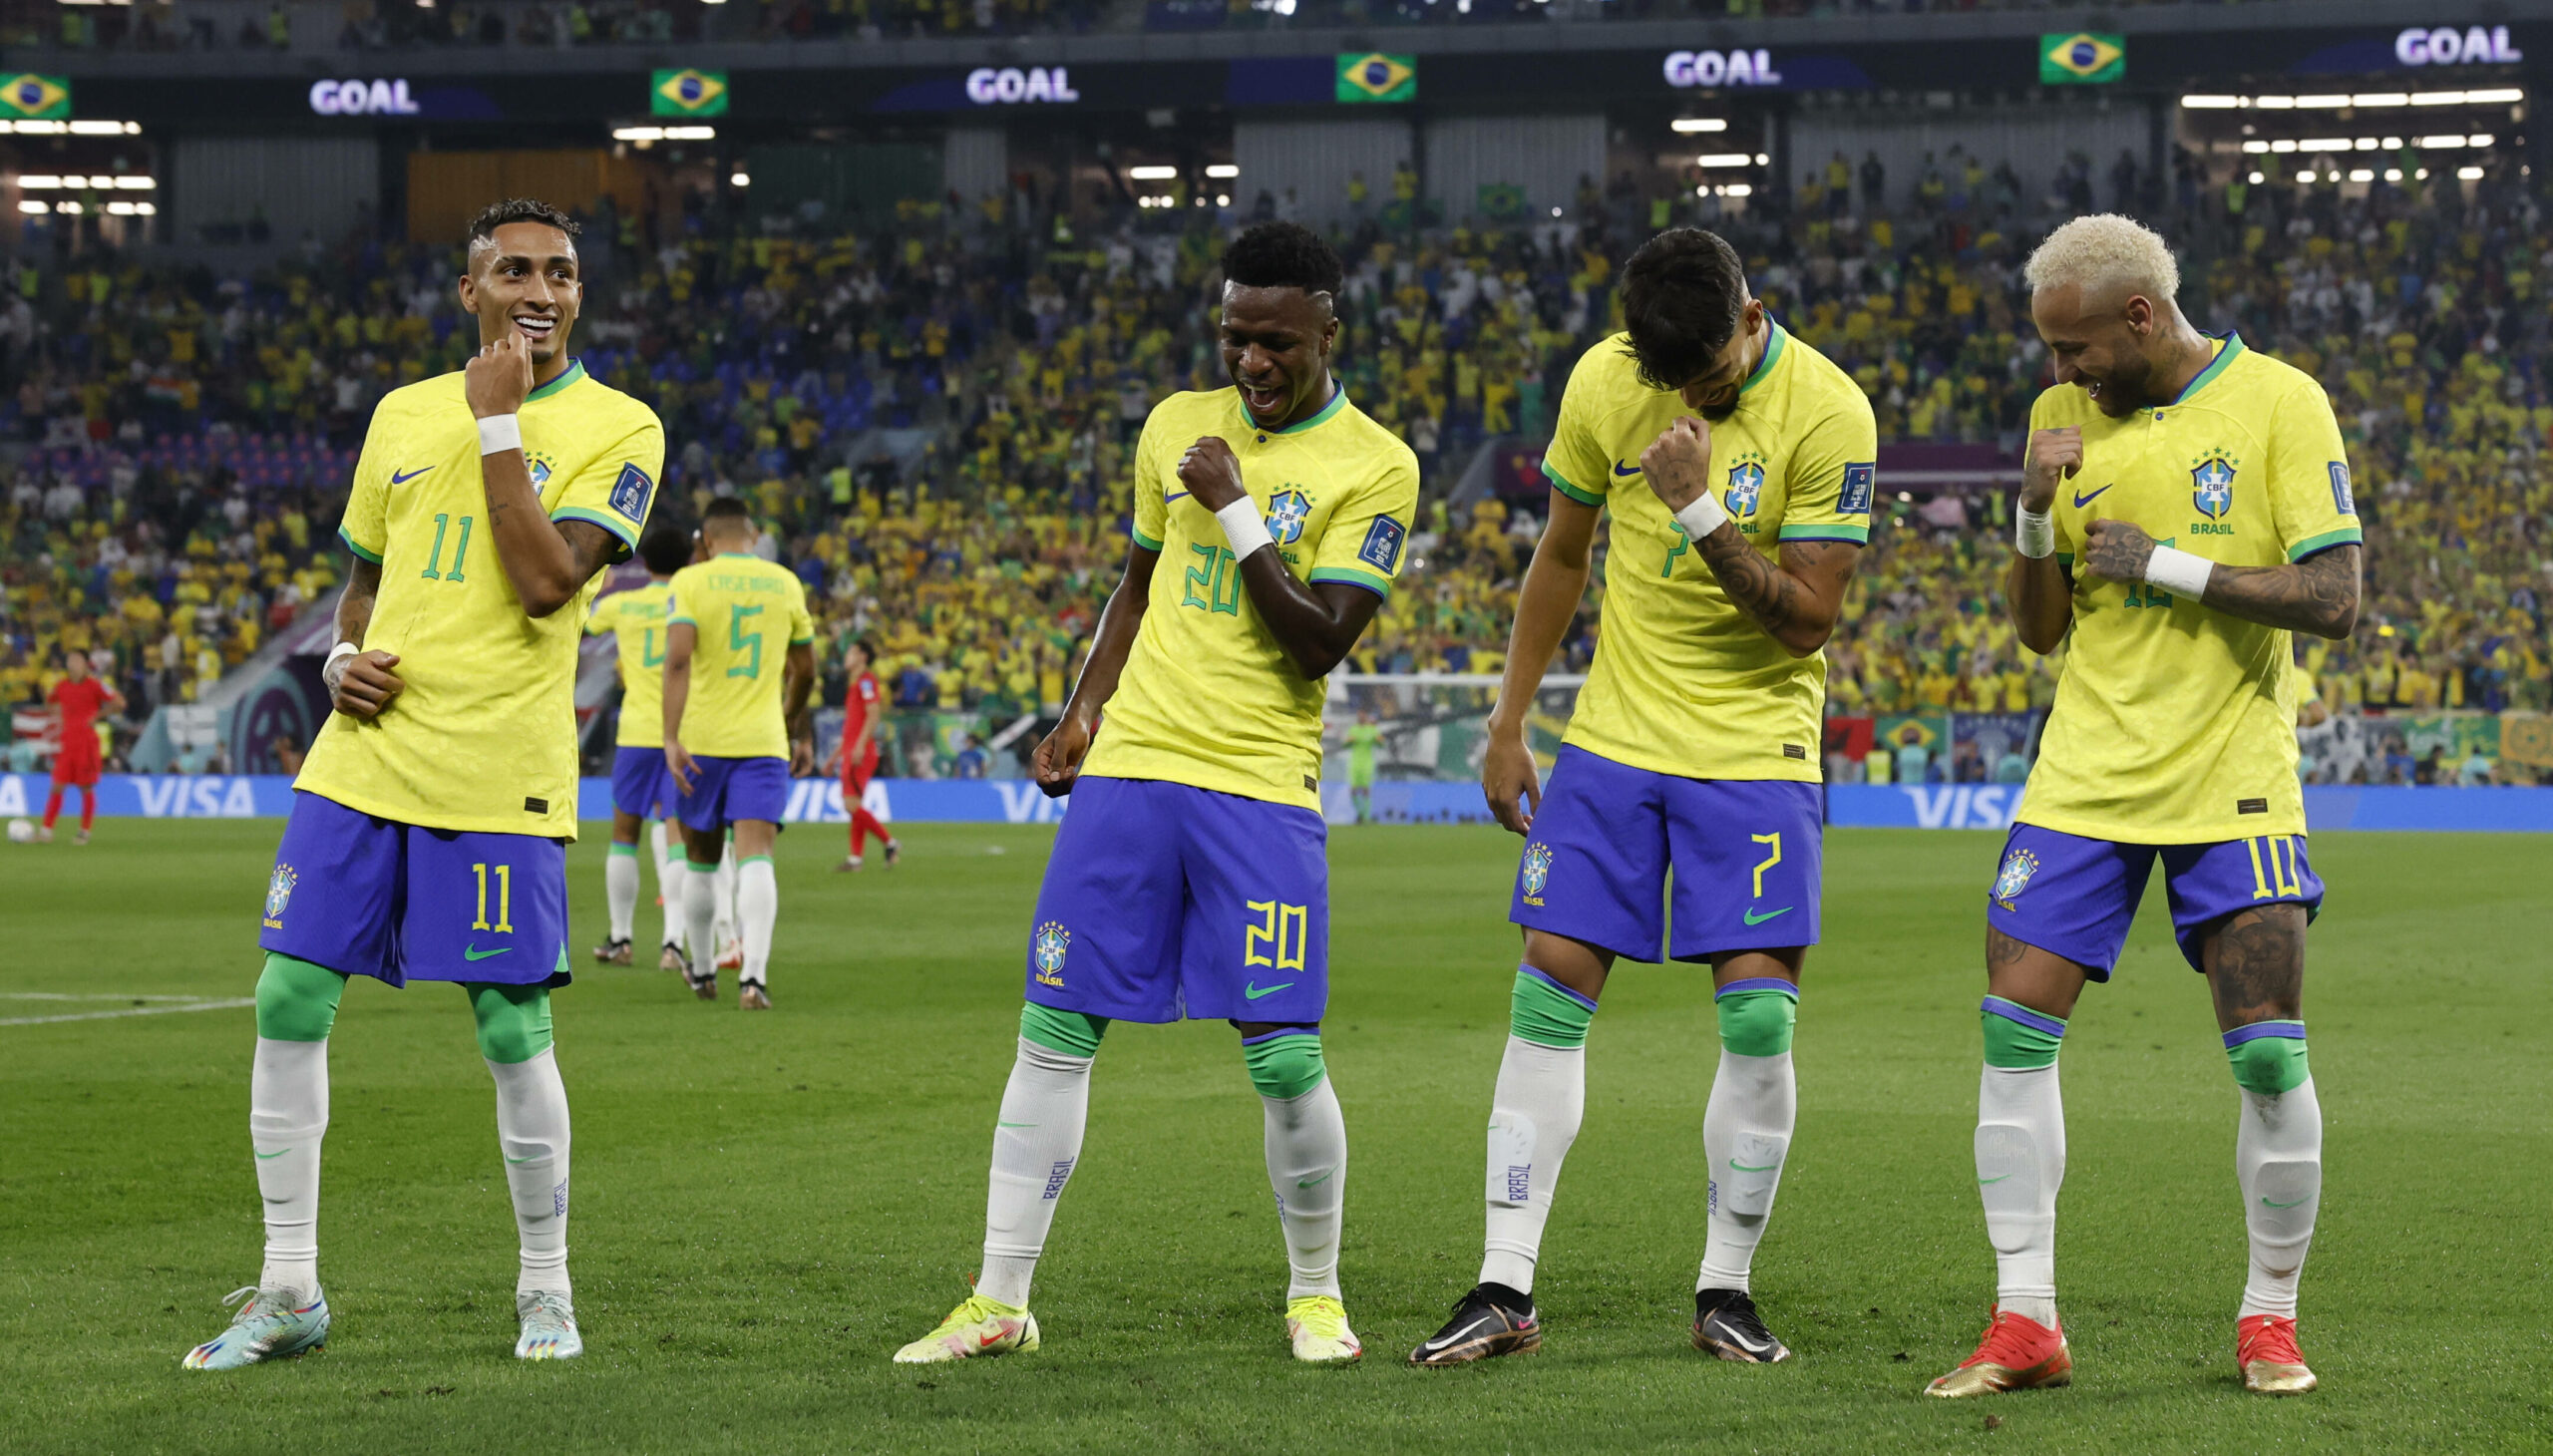 Brasiliens Fußballer jubeln nach dem 1:0 gegen Südkorea